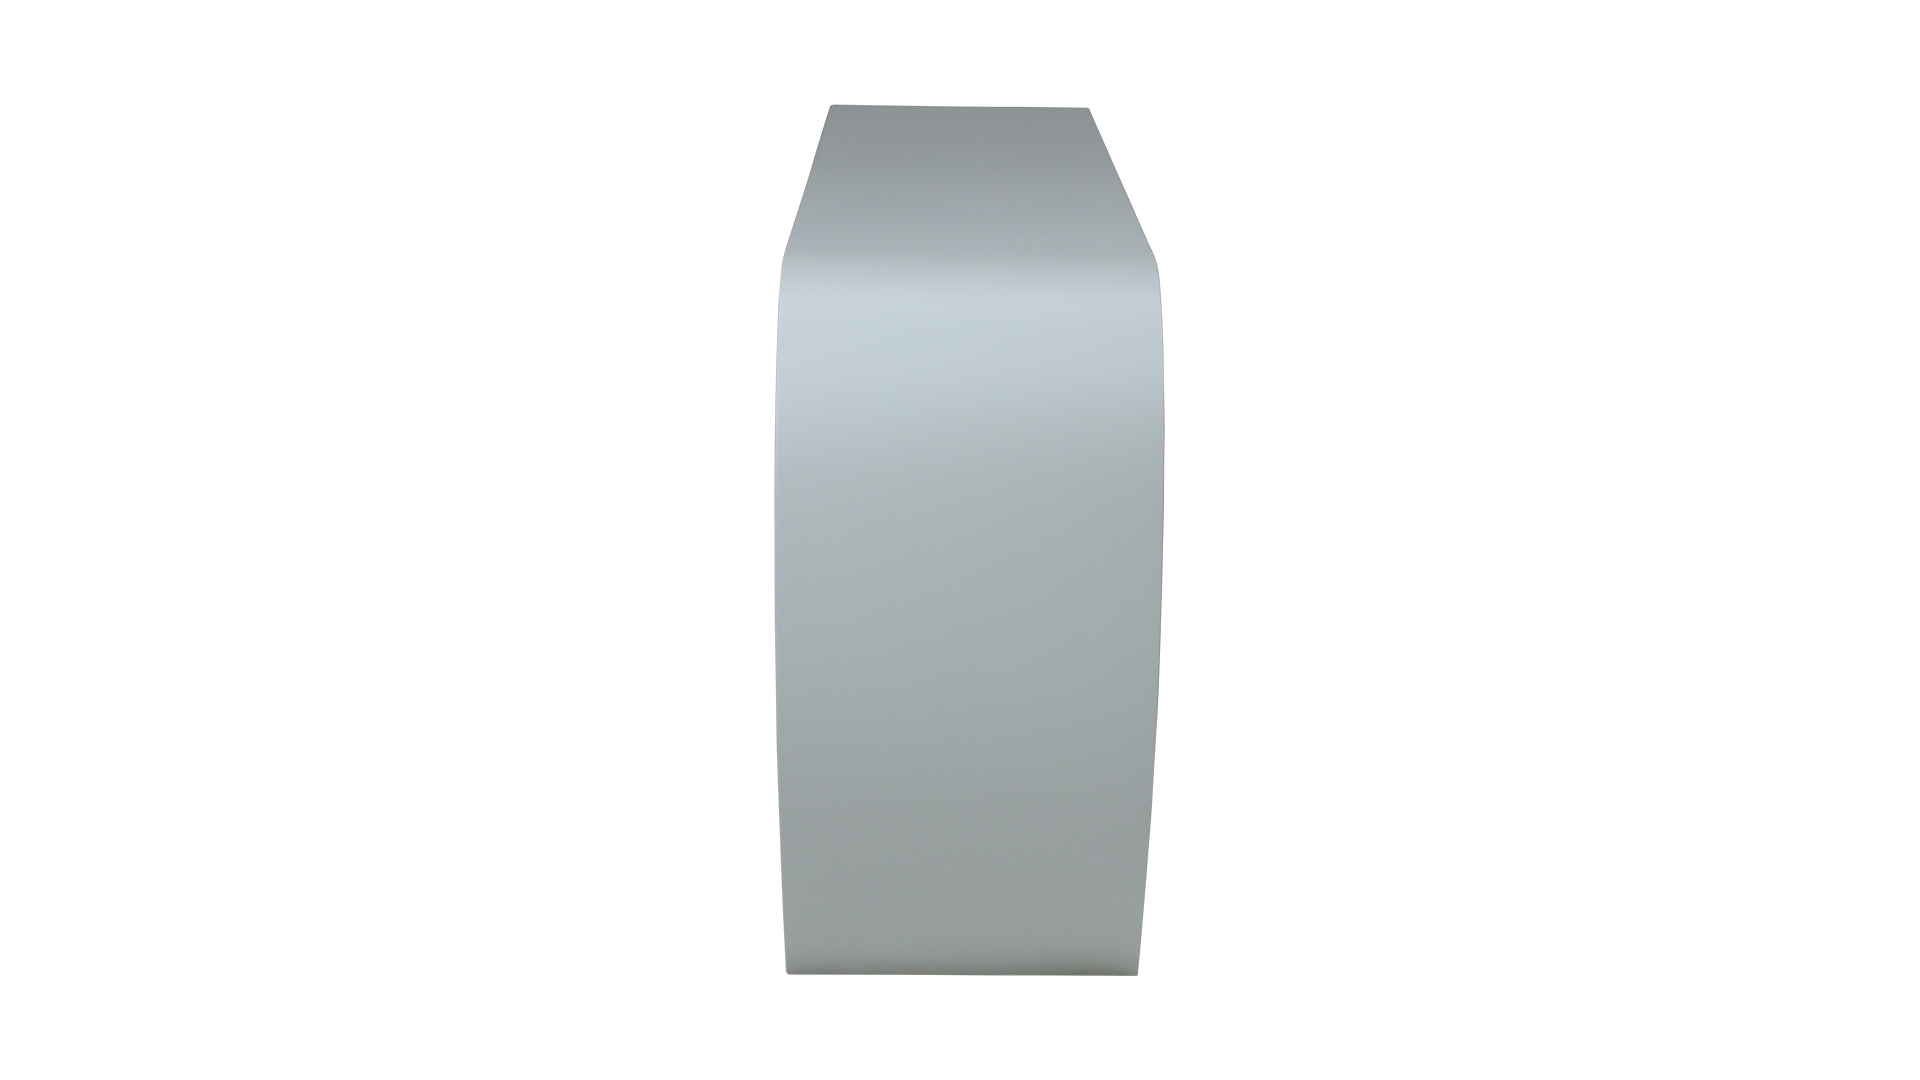 Das Sideboard Sidebow überzeugt mit seiner besonderen Form. Gefertigt wurde das Sideboard aus Echtholzfurnier. Die Farbe ist Weiß. Es ist ein Produkt der Marke Jan Kurtz und hat eine Breite von 123 cm.